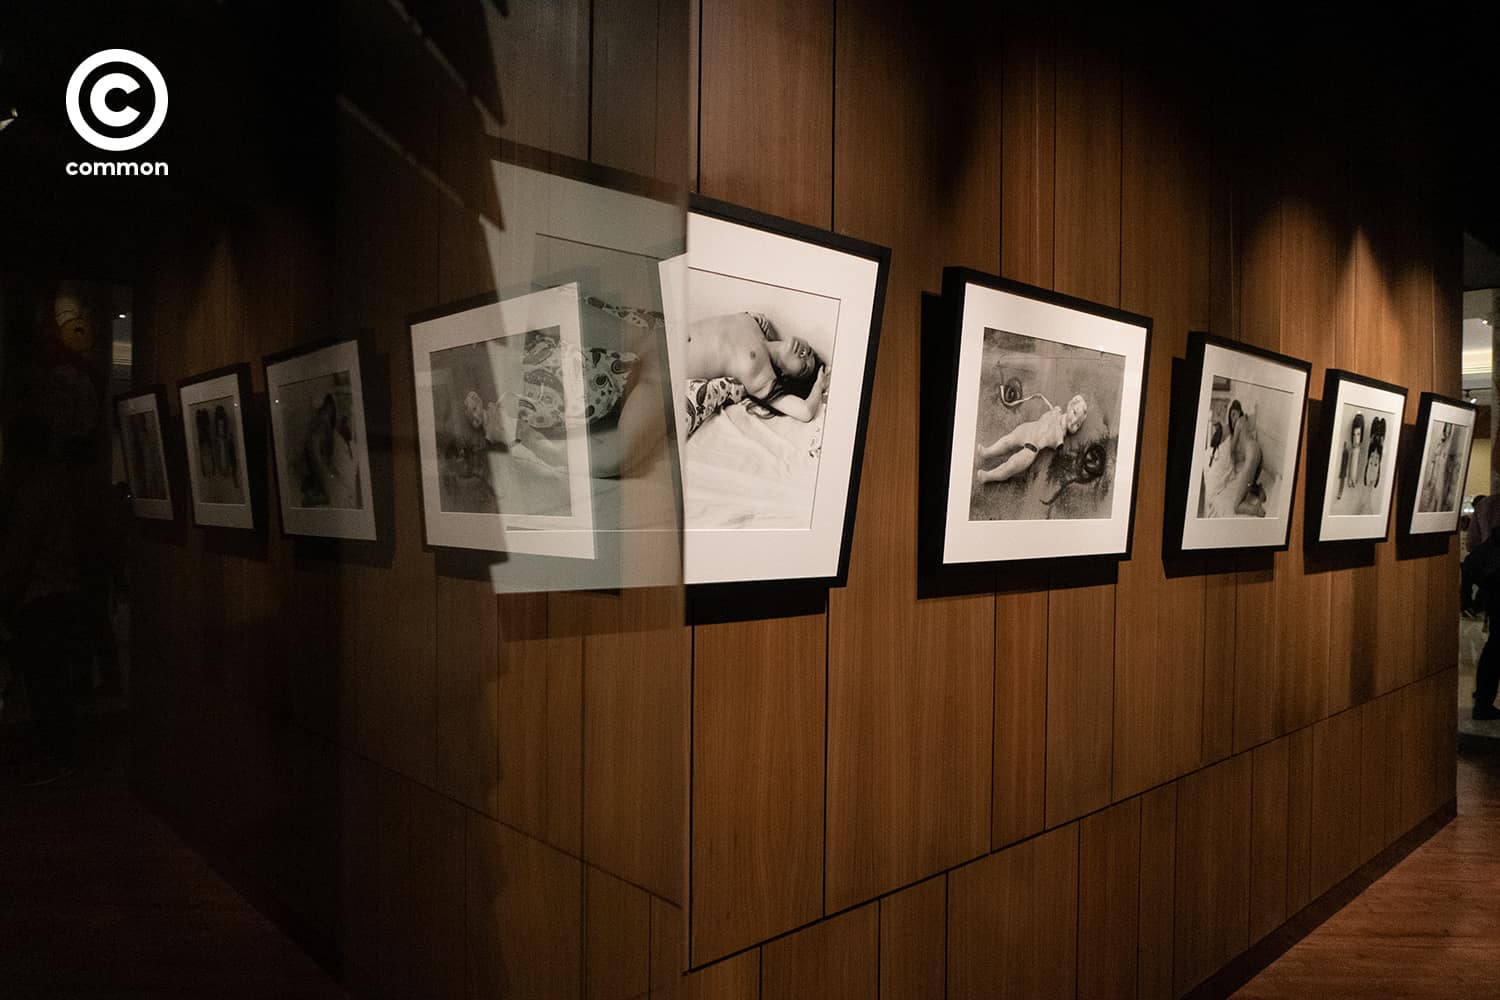 โนบุโยชิ อารากิ Nobuyoshi Araki Leica Gallery Bangkok ช่างภาพ ภาพถ่าย ญี่ปุ่น Life by Film